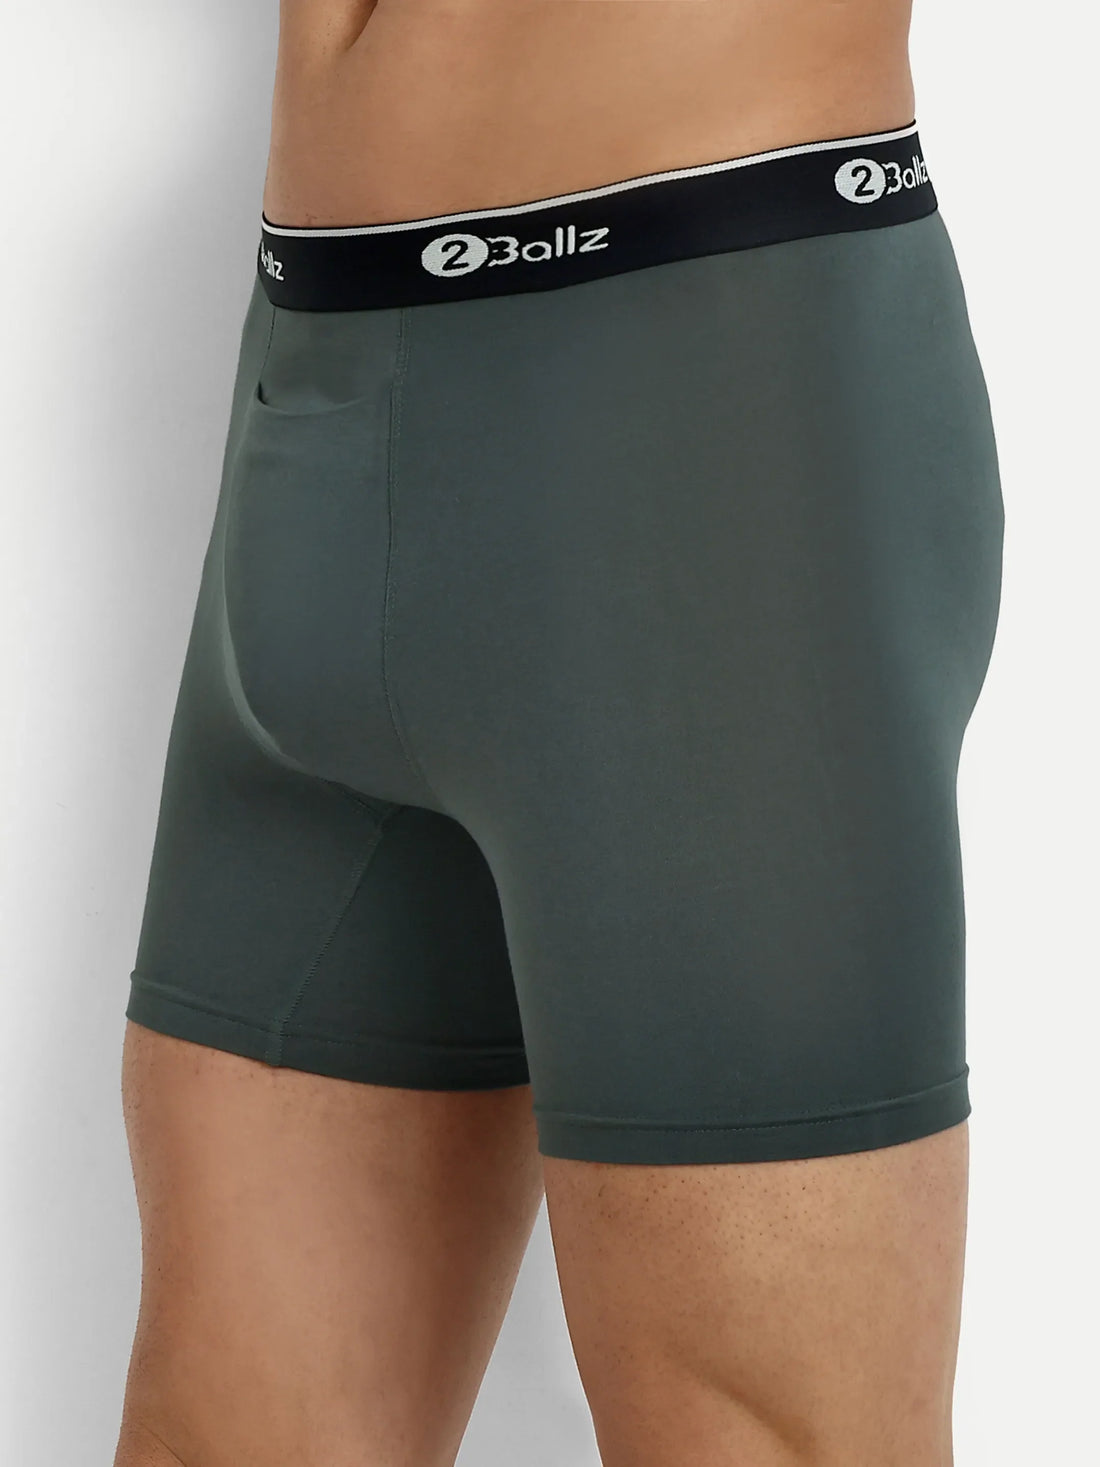 Men's Pouch Underwear, 2Ballz Boxer Brief with Built-in Pouch